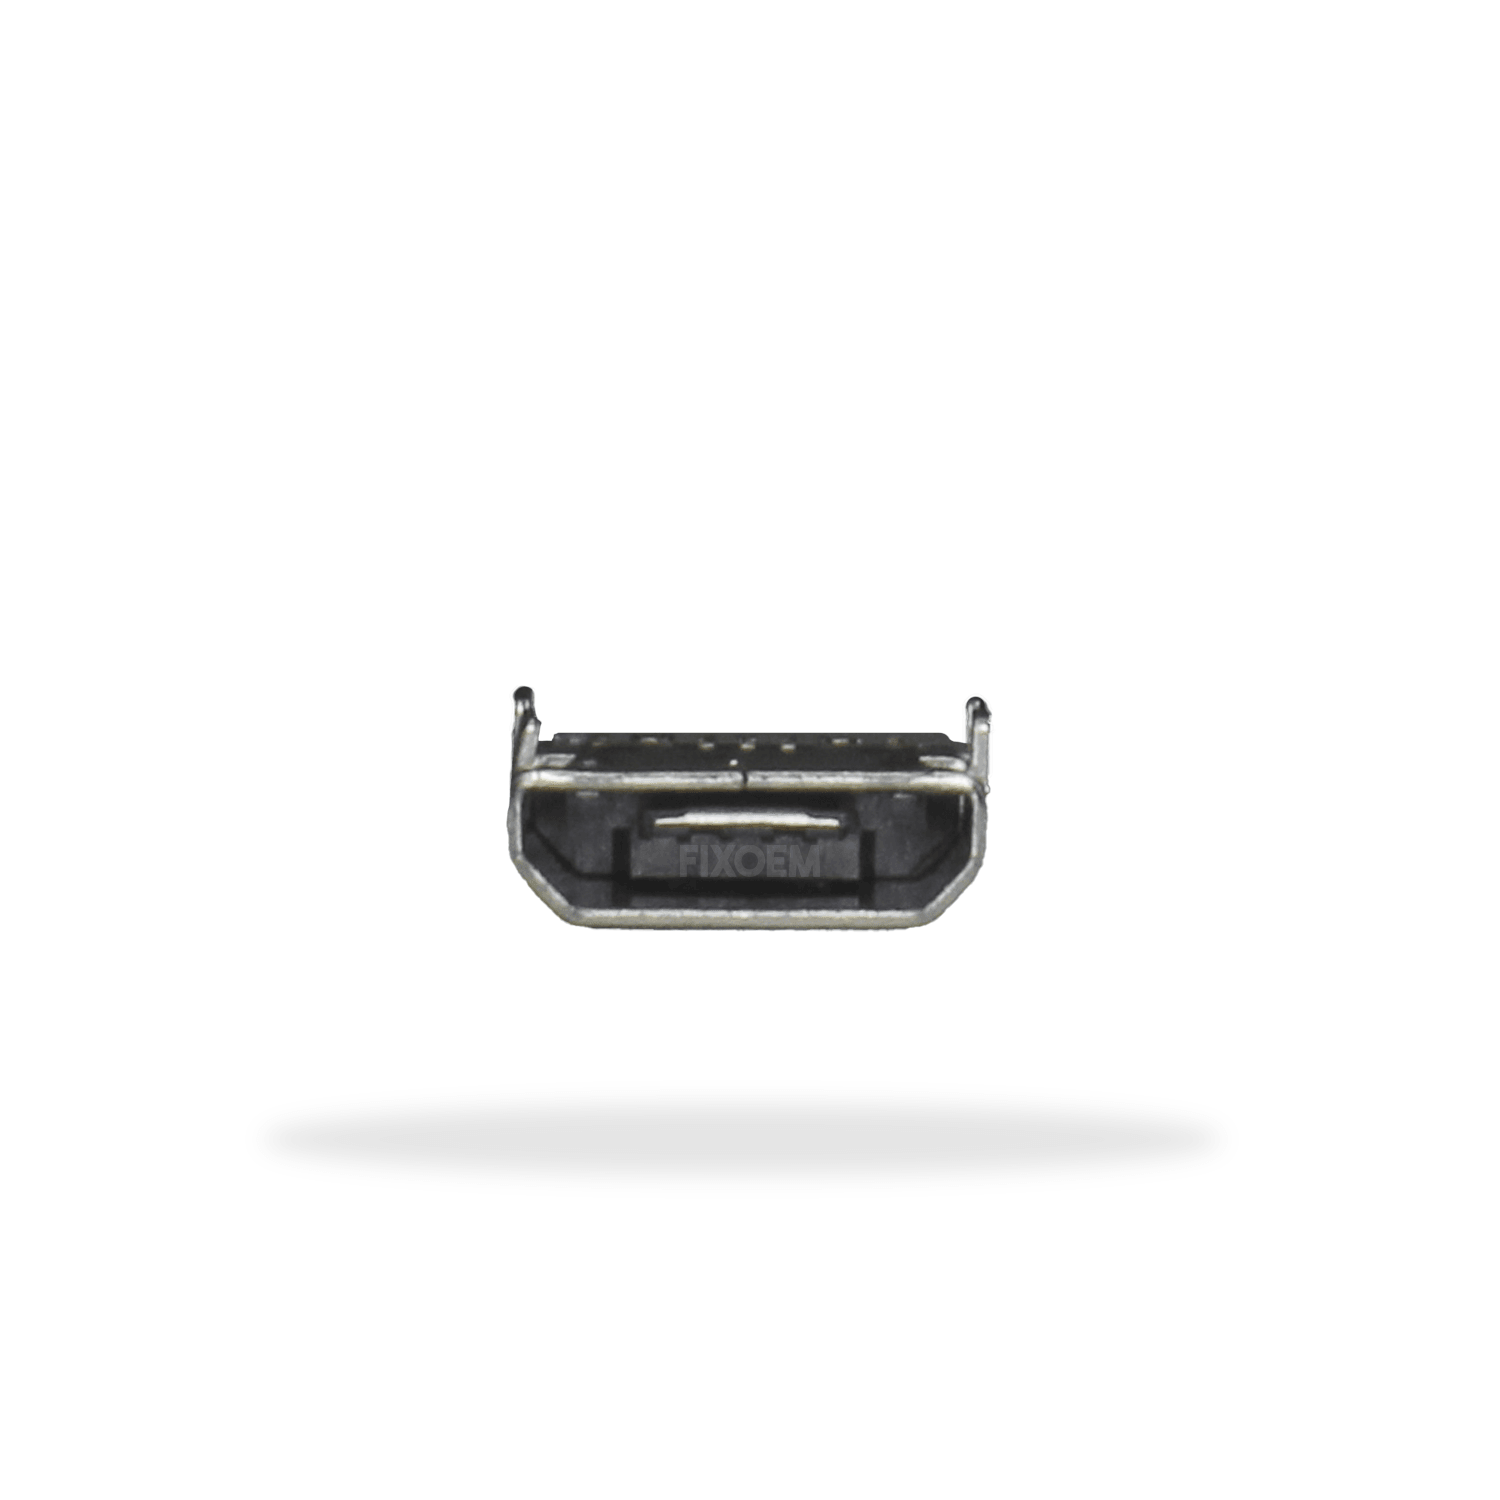 Pin Carga Samsung Grand Neo I9060 5Pz a solo $ 30.00 Refaccion y puestos celulares, refurbish y microelectronica.- FixOEM